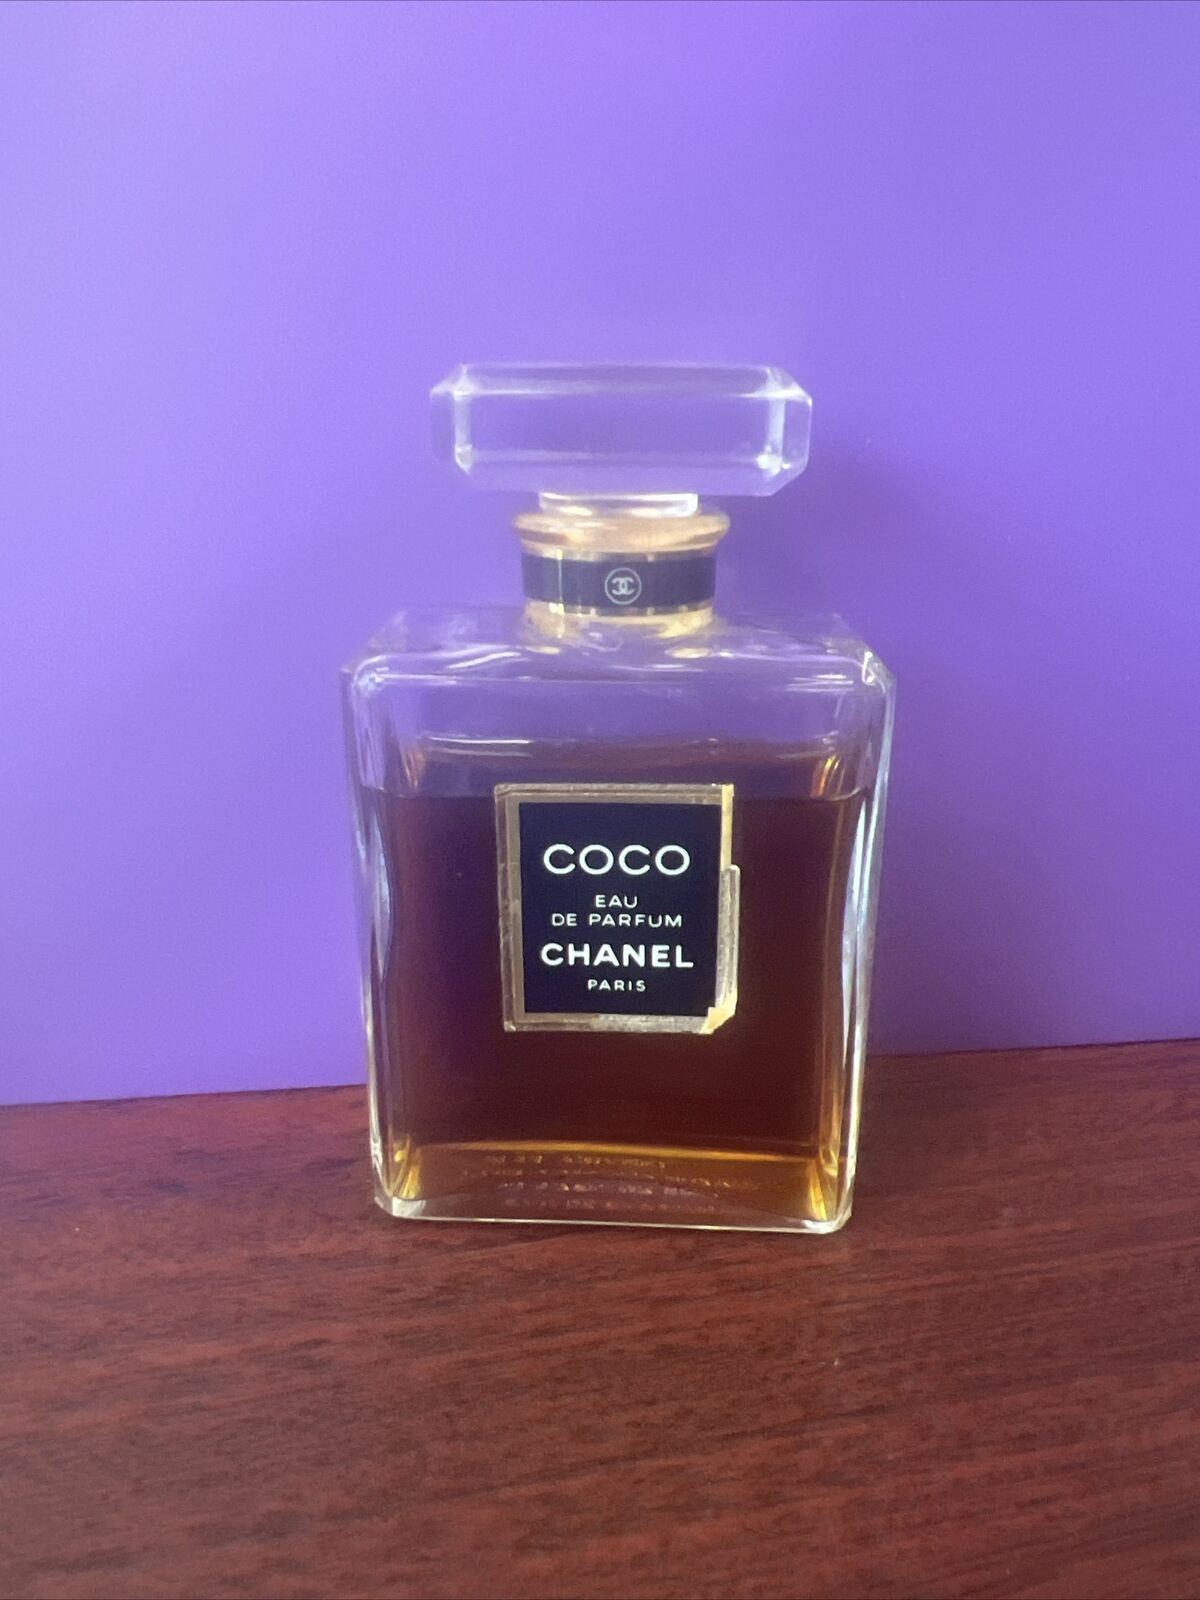 CHANEL COCO Eau de Parfum (50 ml/1.7 oz) Splash Bottle Vintage 1980s